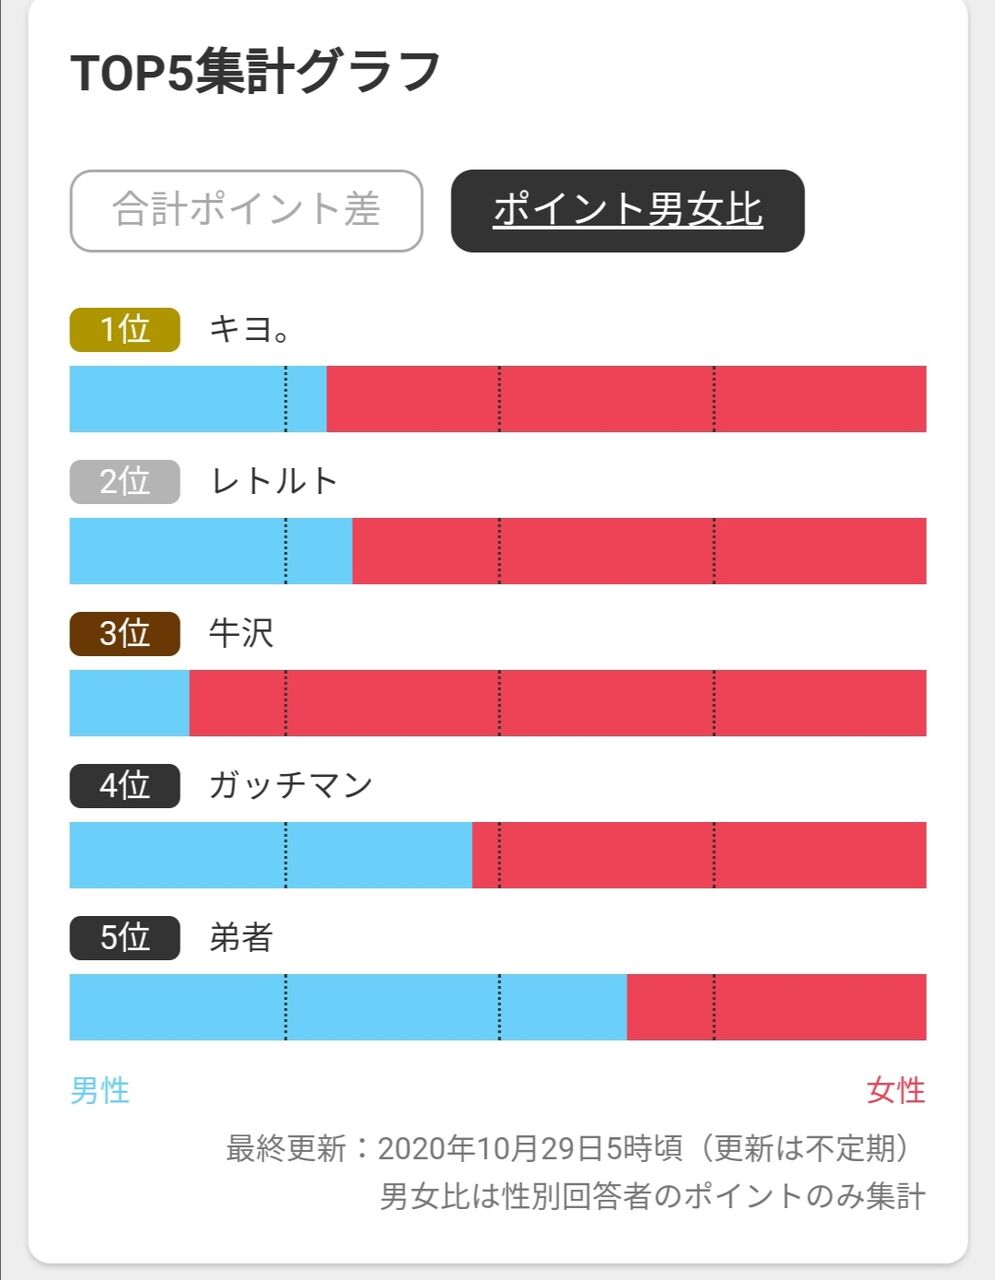 速報 日本のゲーム実況者ランキングが発表される 1位はキヨ なんjsunri